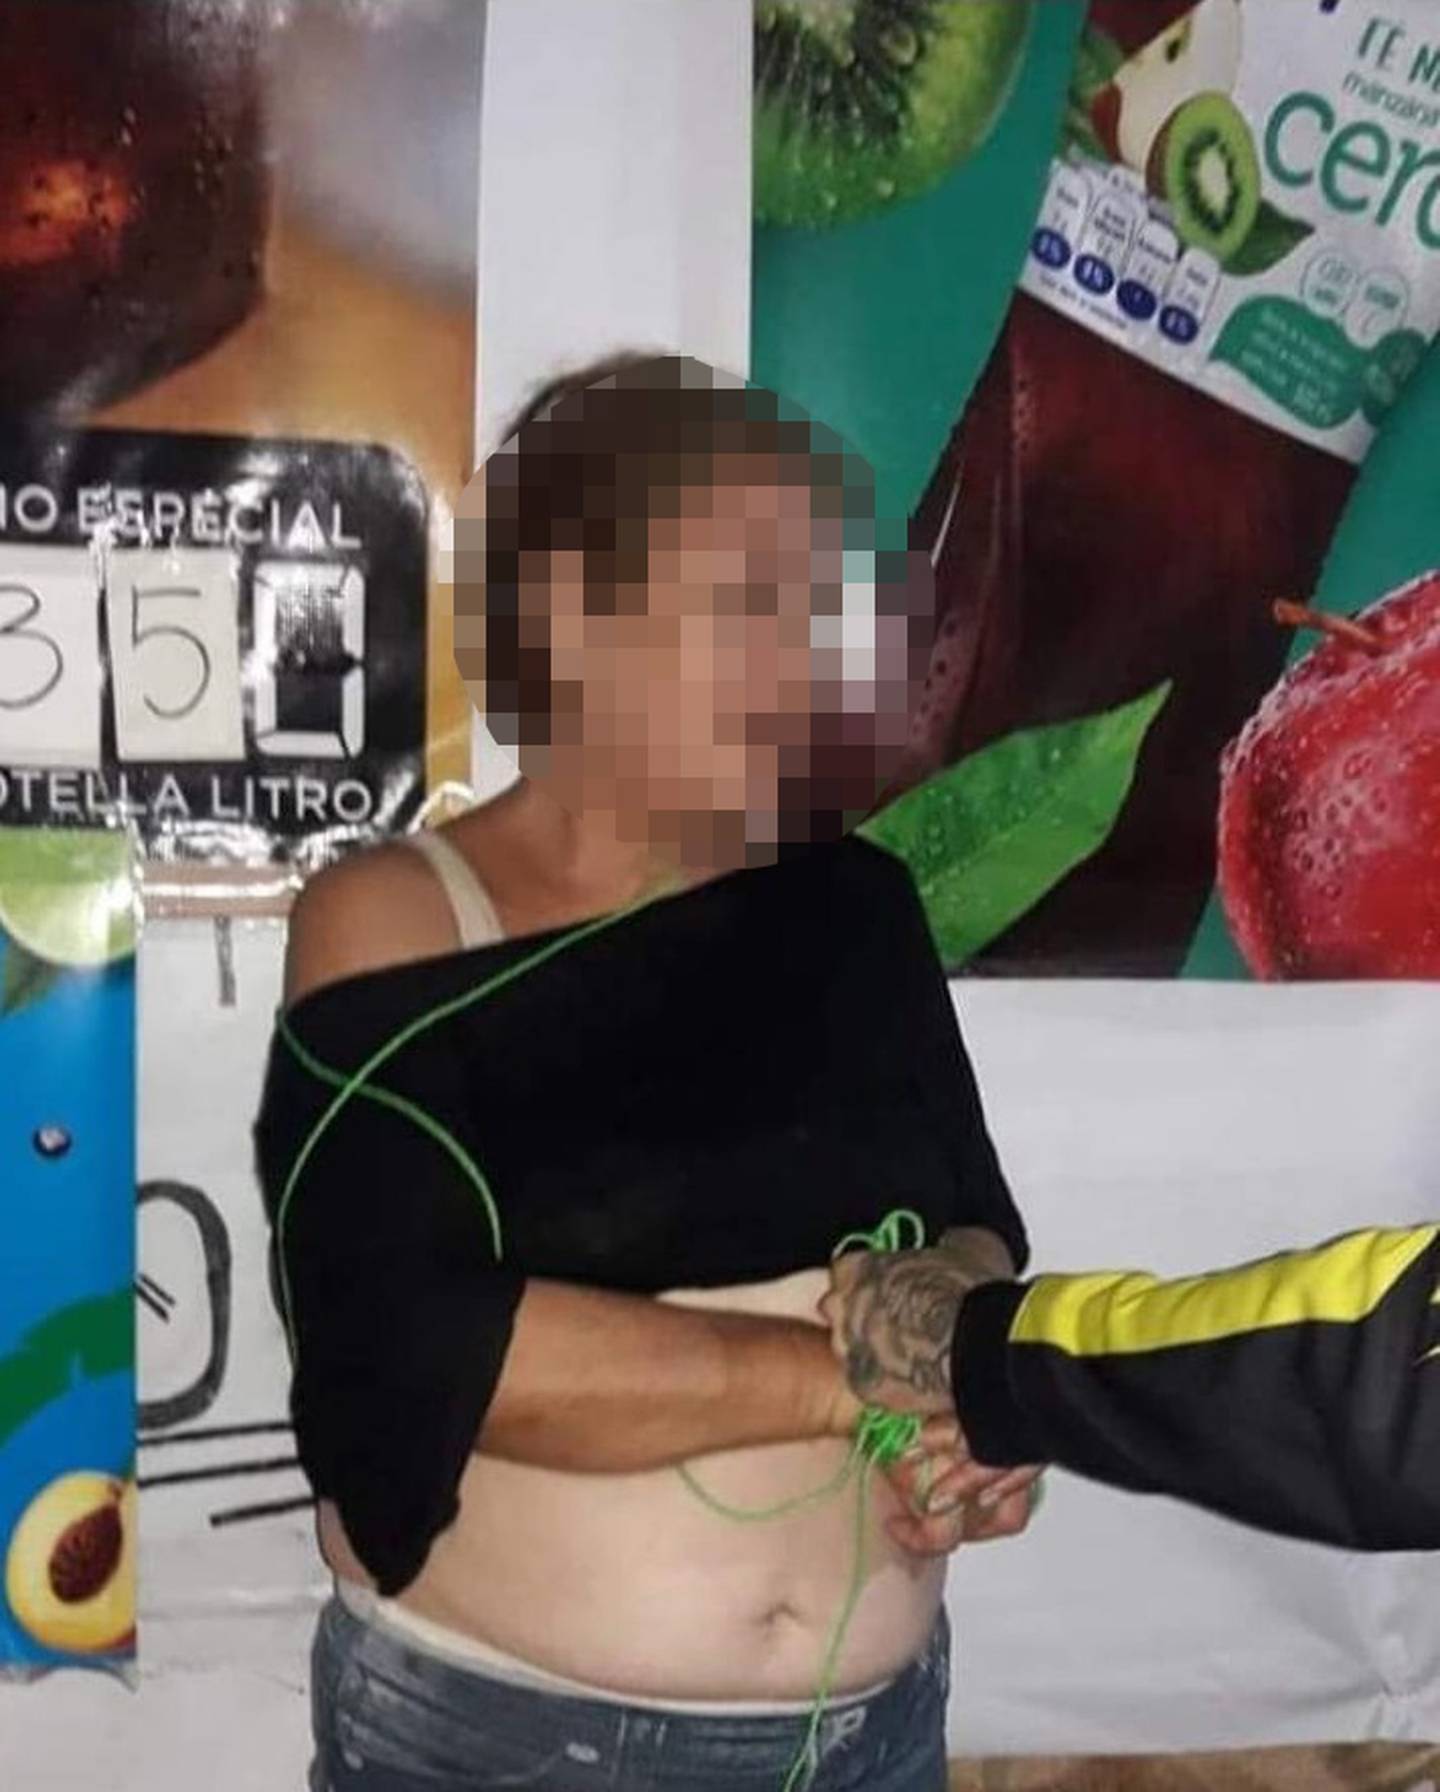 Mujer vapuleada en Curridabat por aparentemente intentar raptar a una niña de 5 años. Foto cortesía.